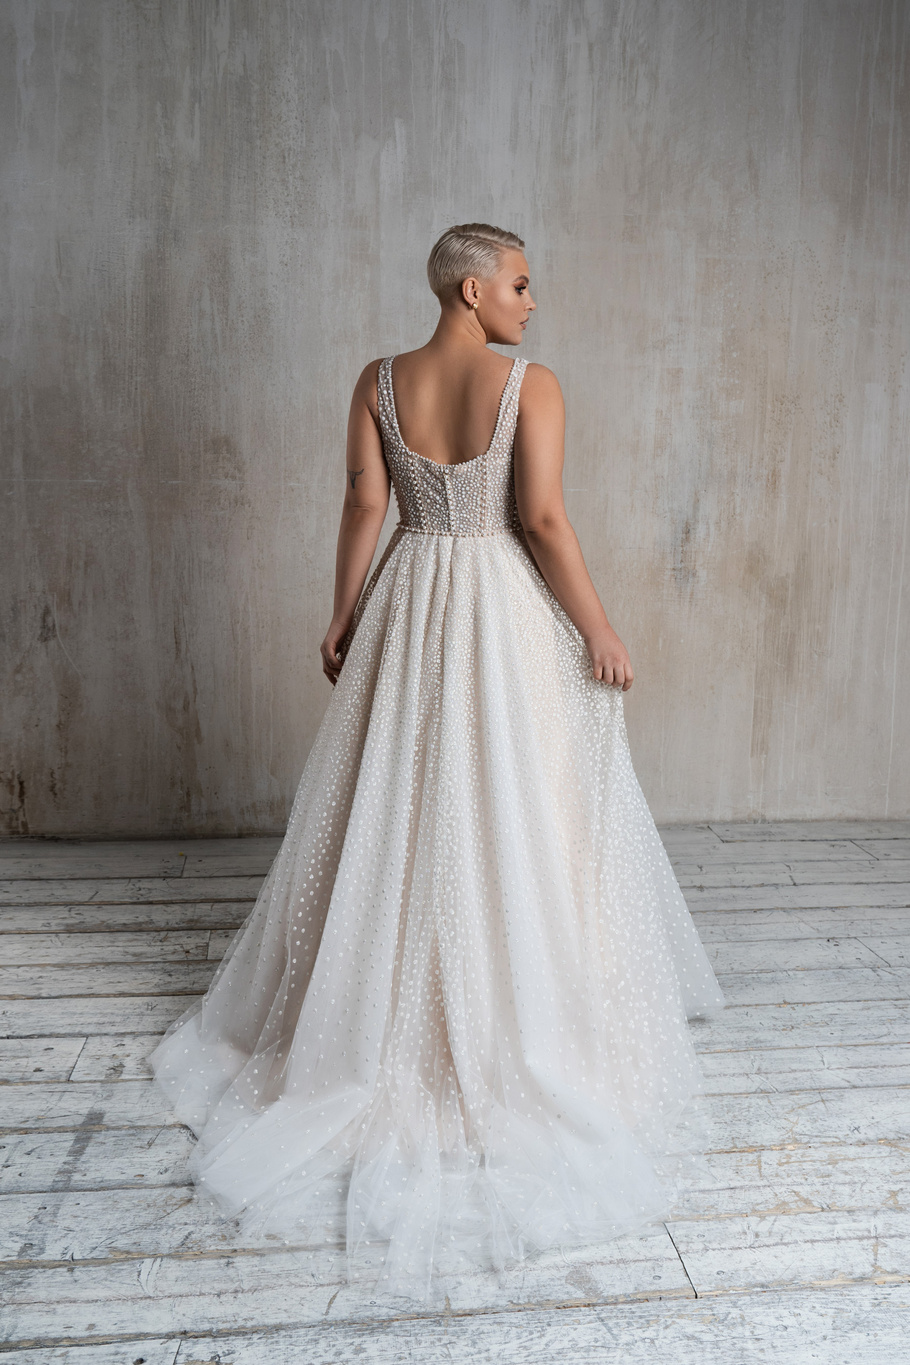 Купить свадебное платье «Аморе плюс» Натальи Романовой из коллекции 2021 в салоне «Мэри Трюфель»